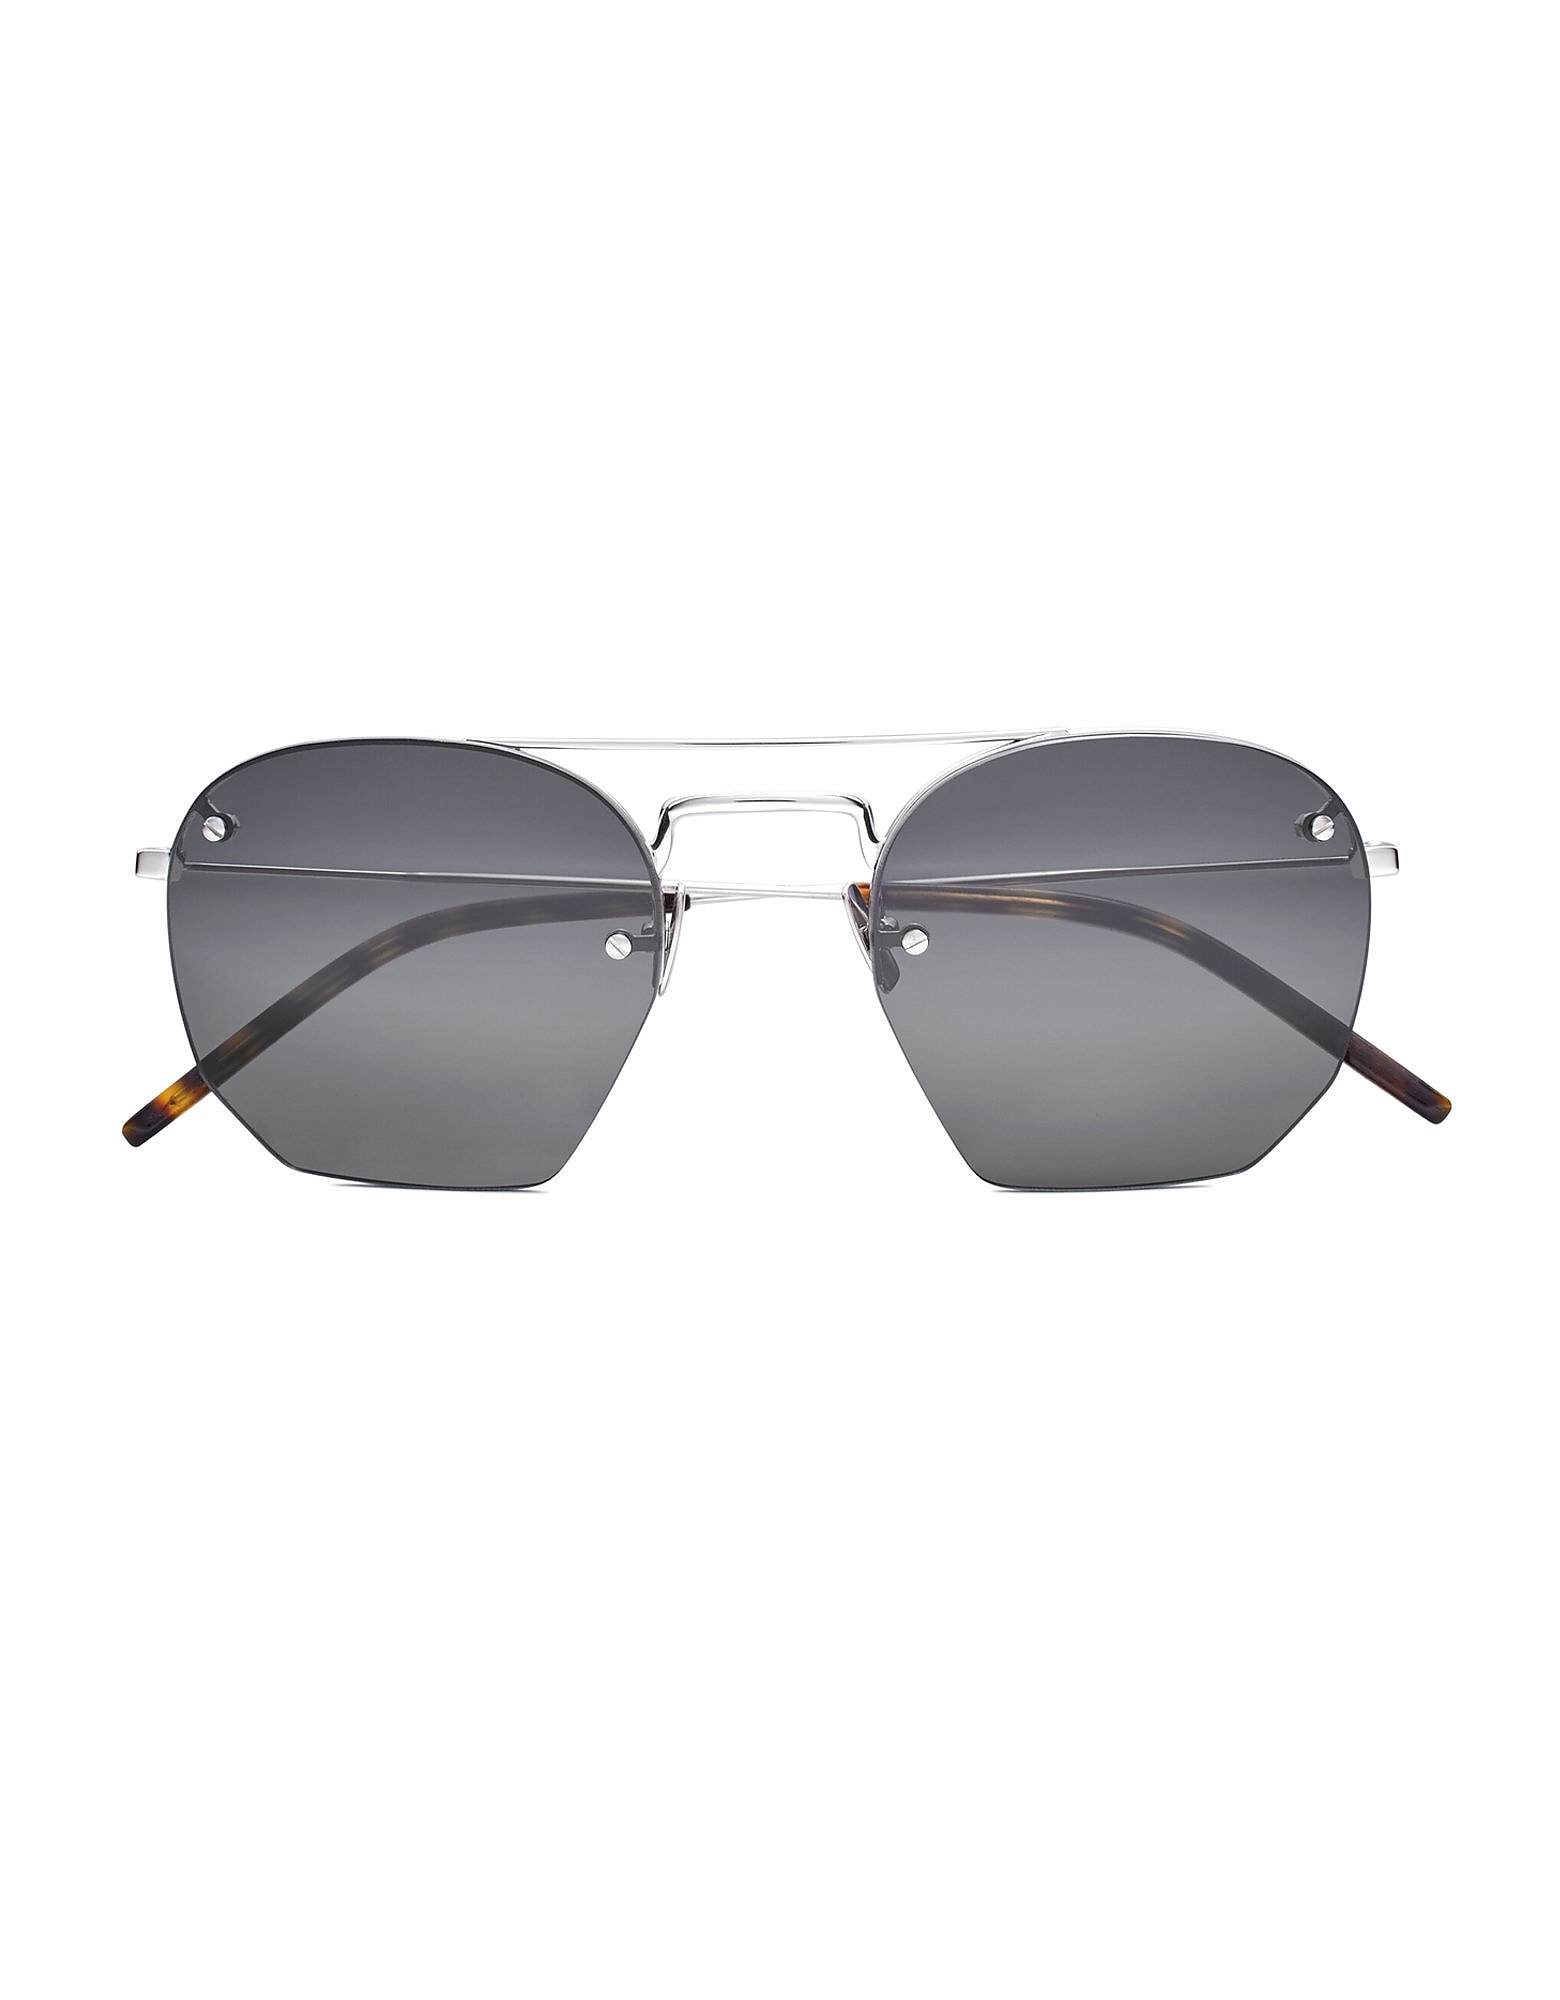 Saint Laurent Sunglasses Metal Double Bridge Frame Men's Sunglasses